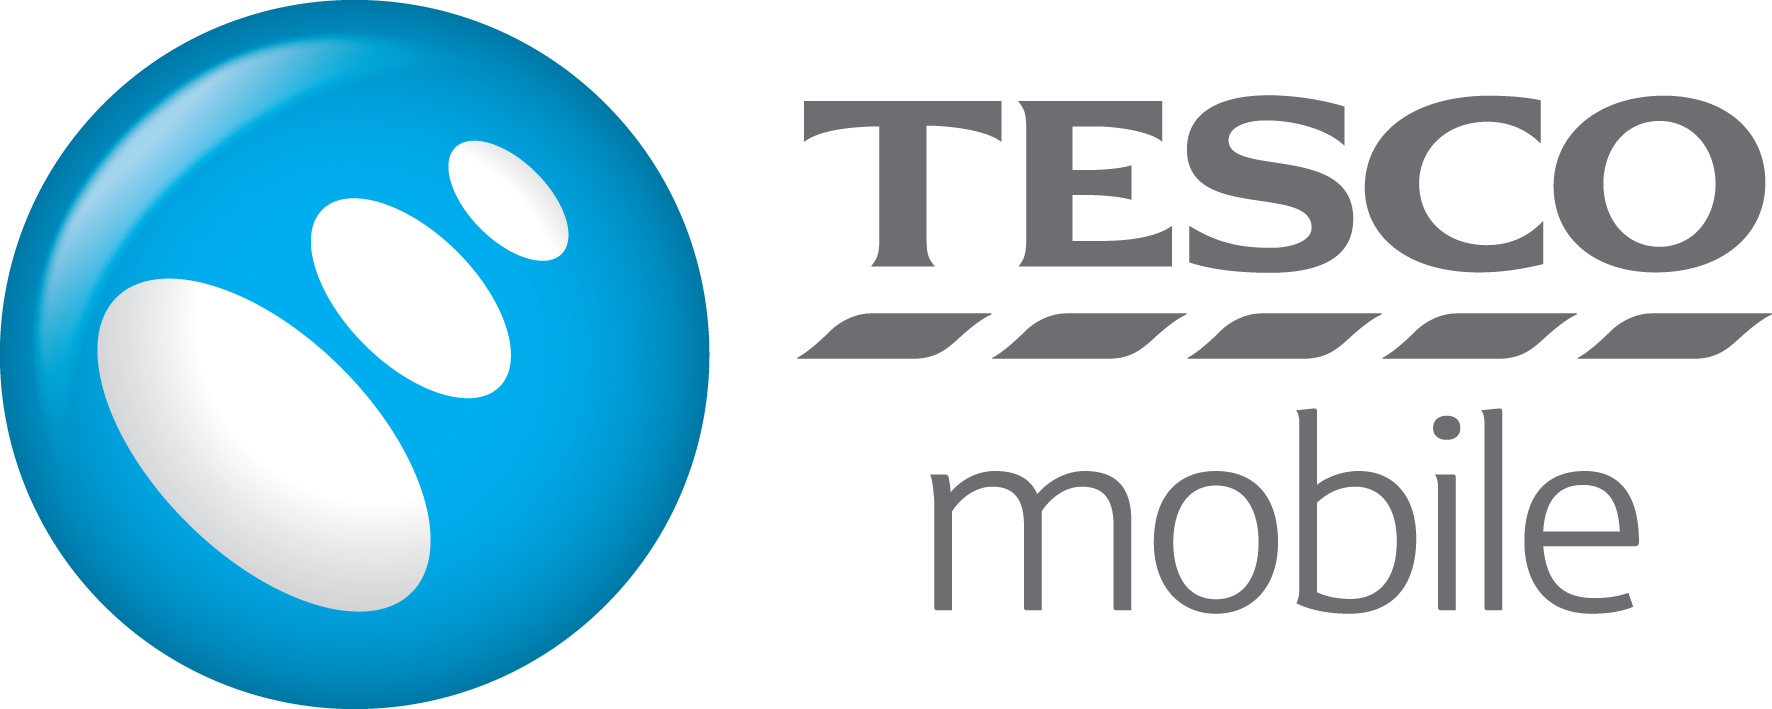 Los clientes de Tesco Mobile PAYG se actualizaron a 4G gratis